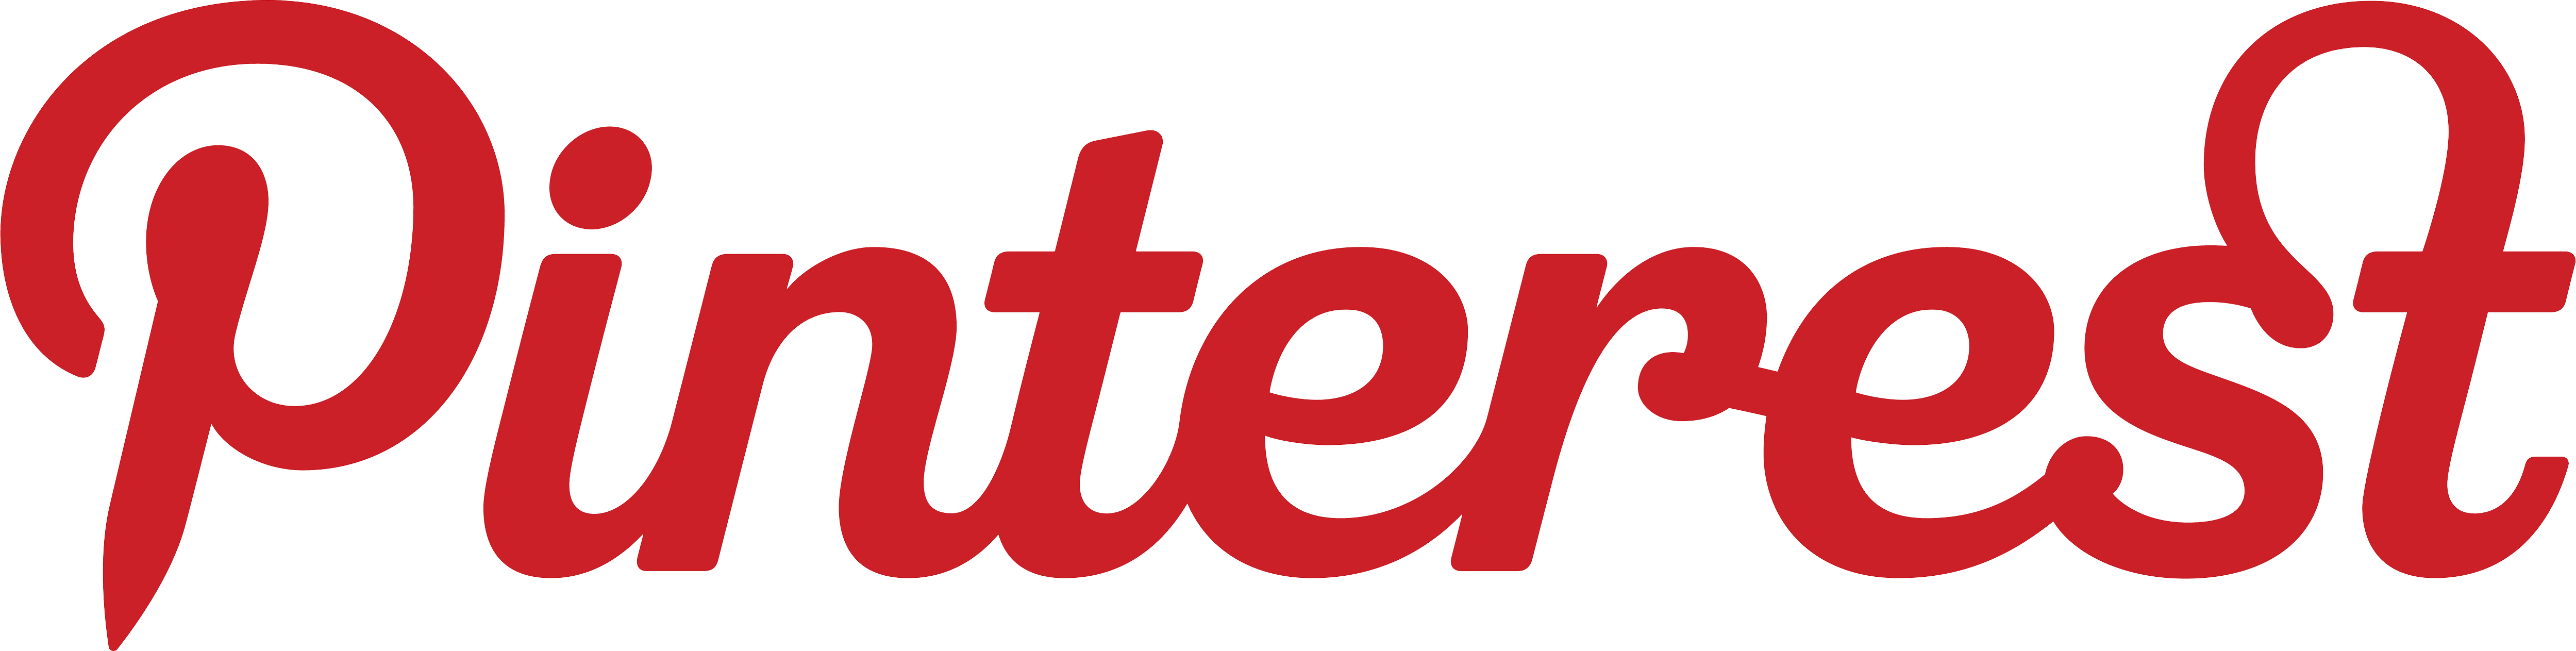 Логотип. Ooget com